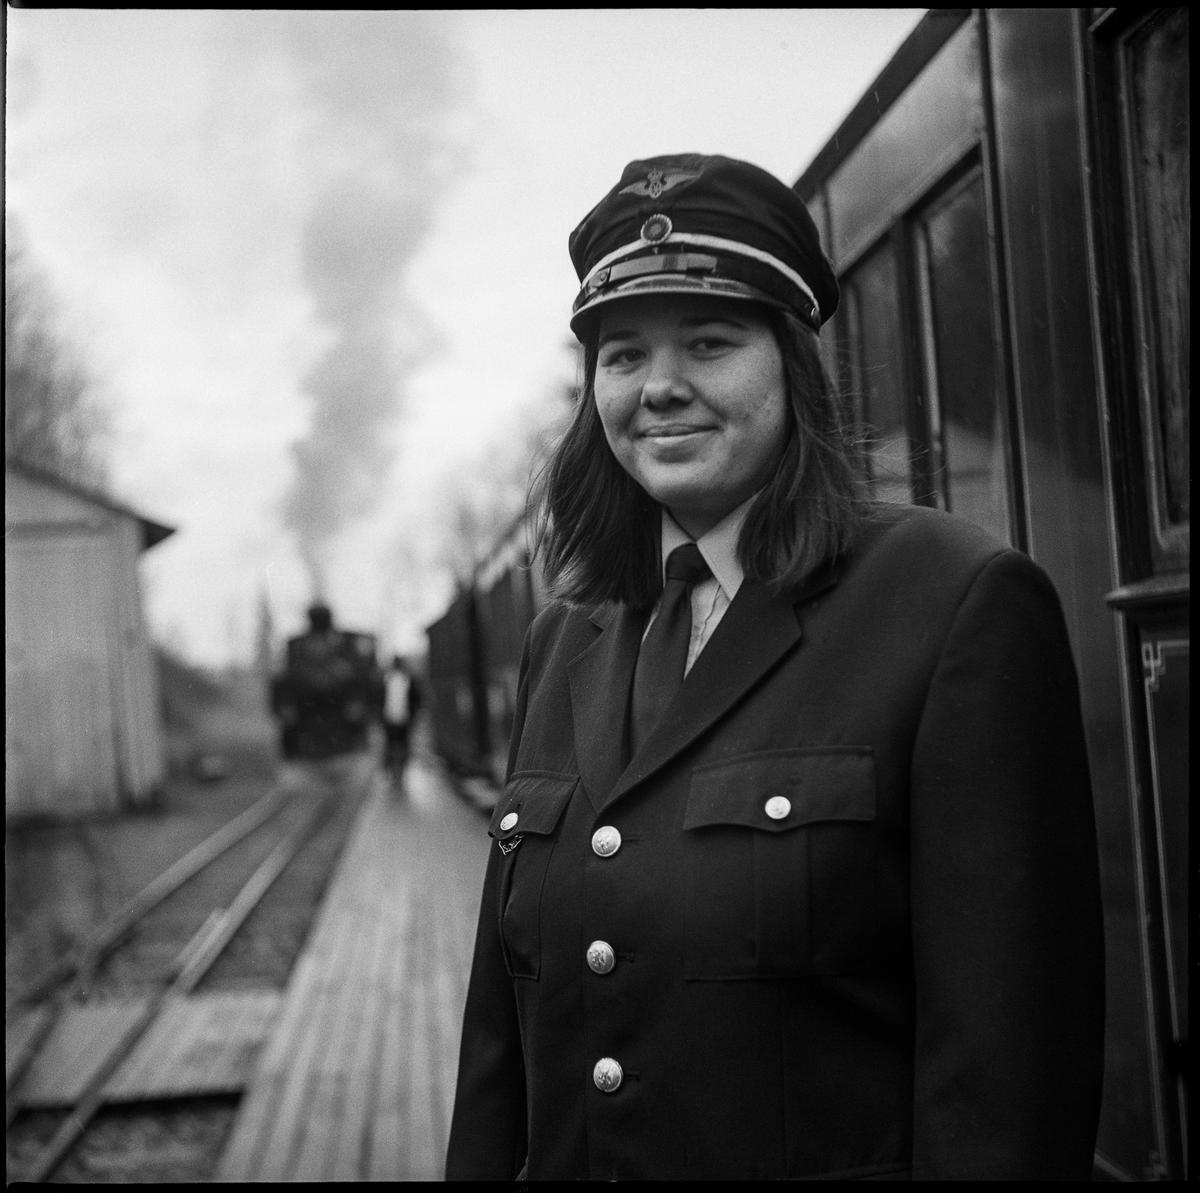 Kvinnelig uniformert frivillig i tjeneste på Bingsfos stasjon. I bakgrunnen skimtes lokstallen på Bingsfos og et damplokomotiv.